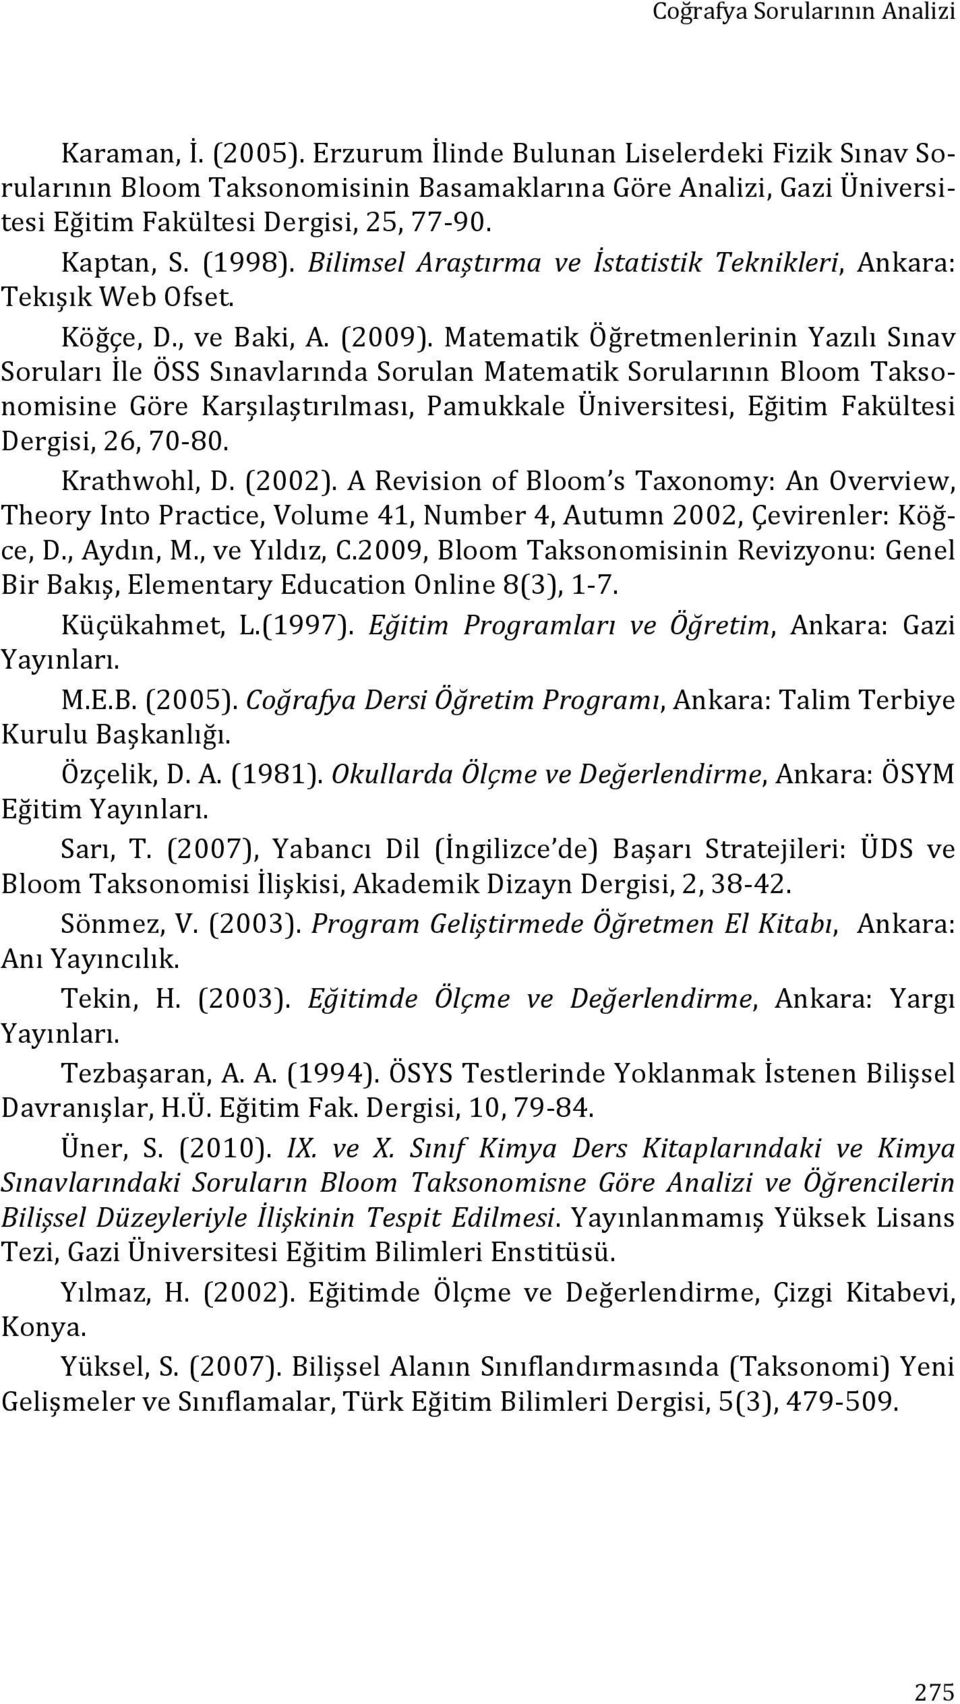 Bilimsel Araştırma ve İstatistik Teknikleri, Ankara: Tekışık Web Ofset. Köğçe, D., ve Baki, A. (2009).